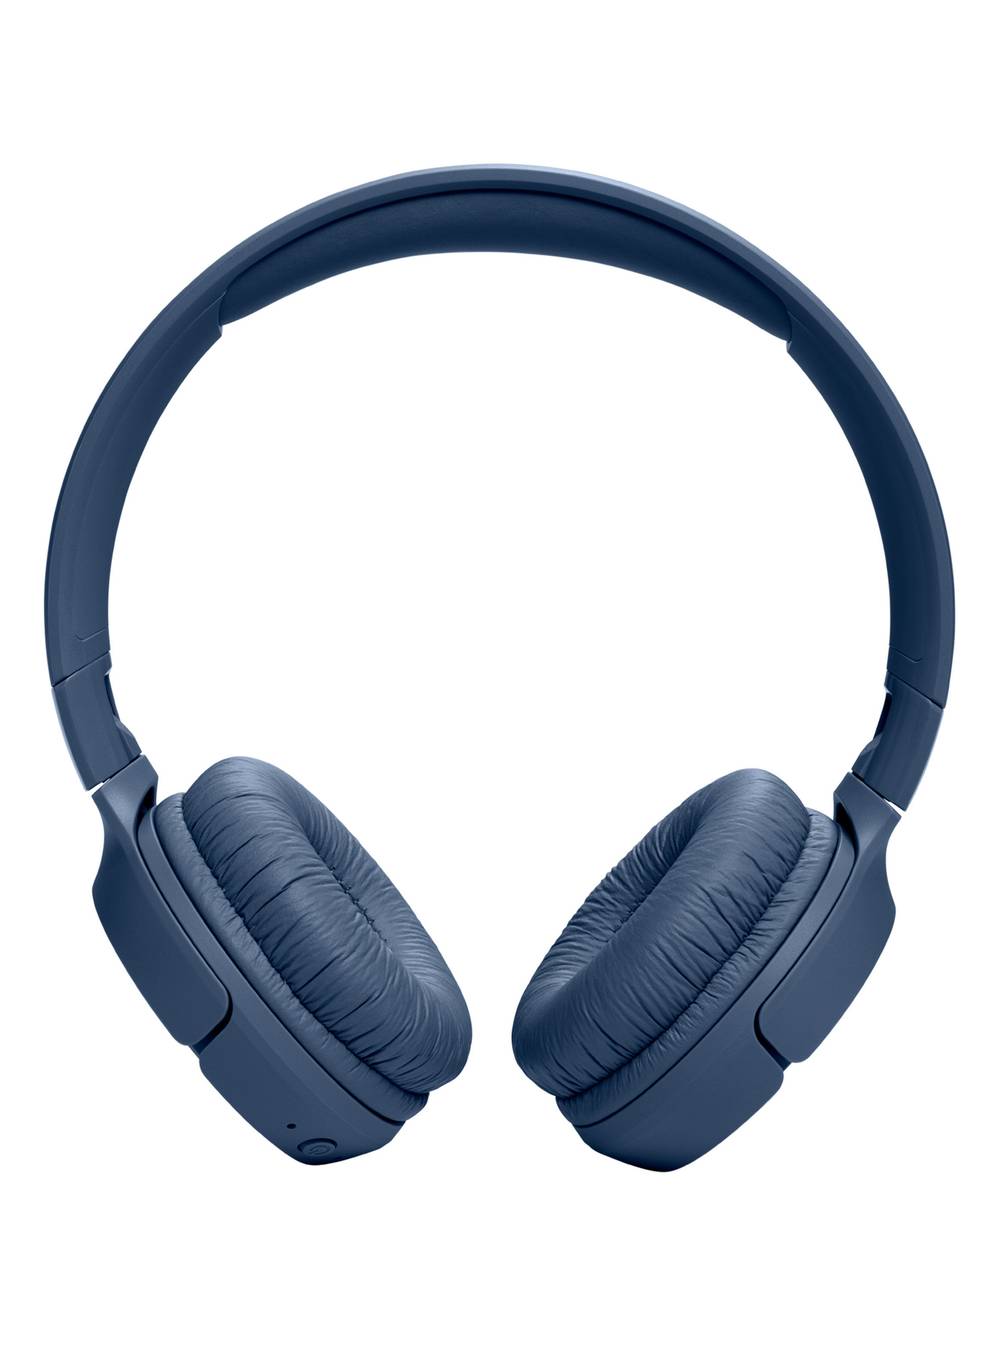 Jbl audífonos bluetooth on-ear 520bt bue